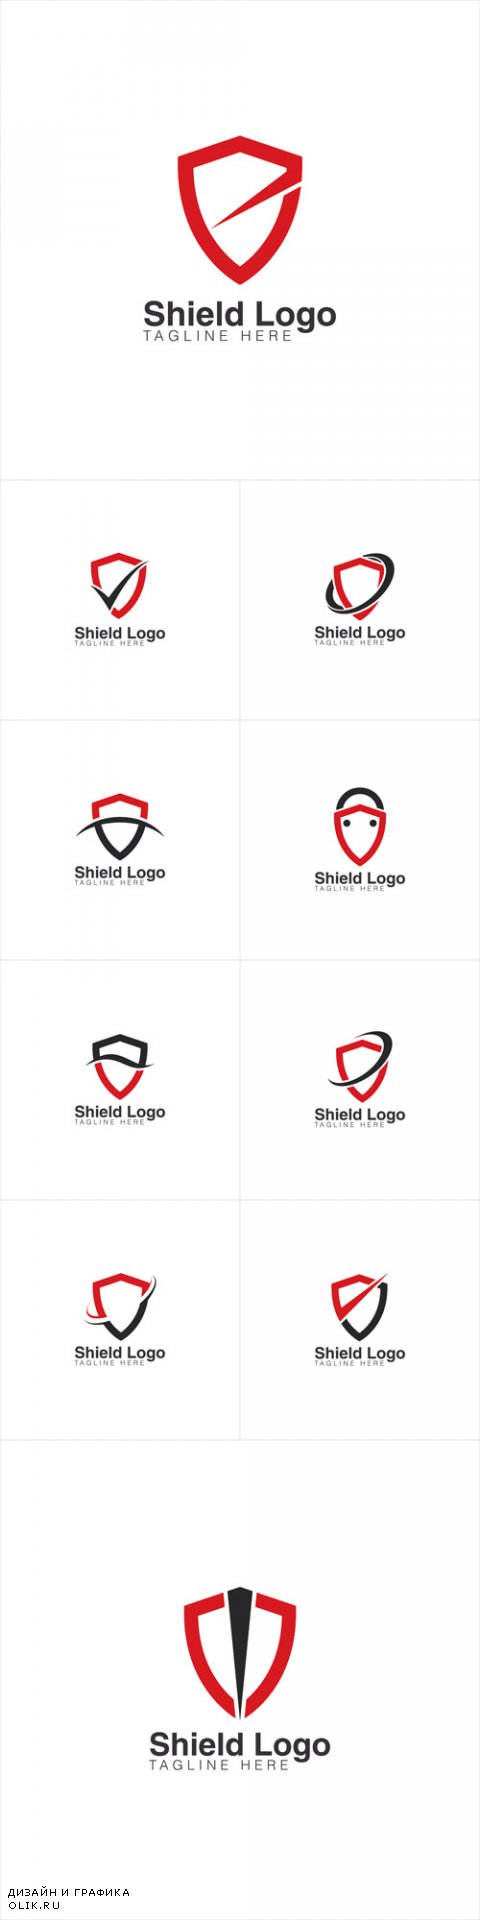 Vector Simple Shield Creative Concept Logo Design